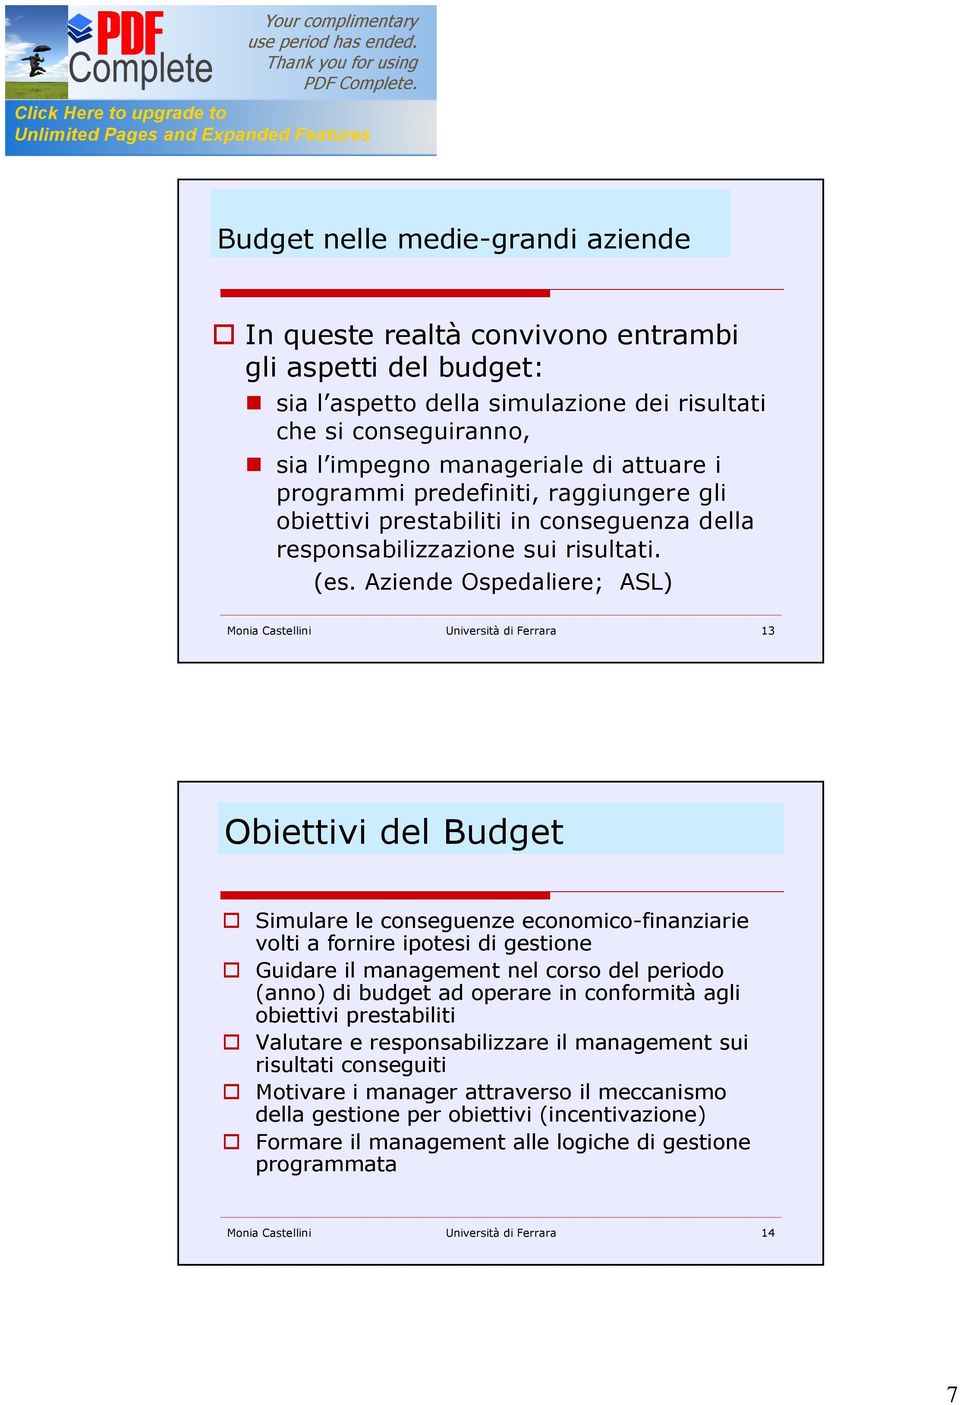 Aziende Ospedaliere; ASL) Monia Castellini Università di Ferrara 13 Obiettivi del Budget Simulare le conseguenze economico-finanziarie volti a fornire ipotesi di gestione Guidare il management nel